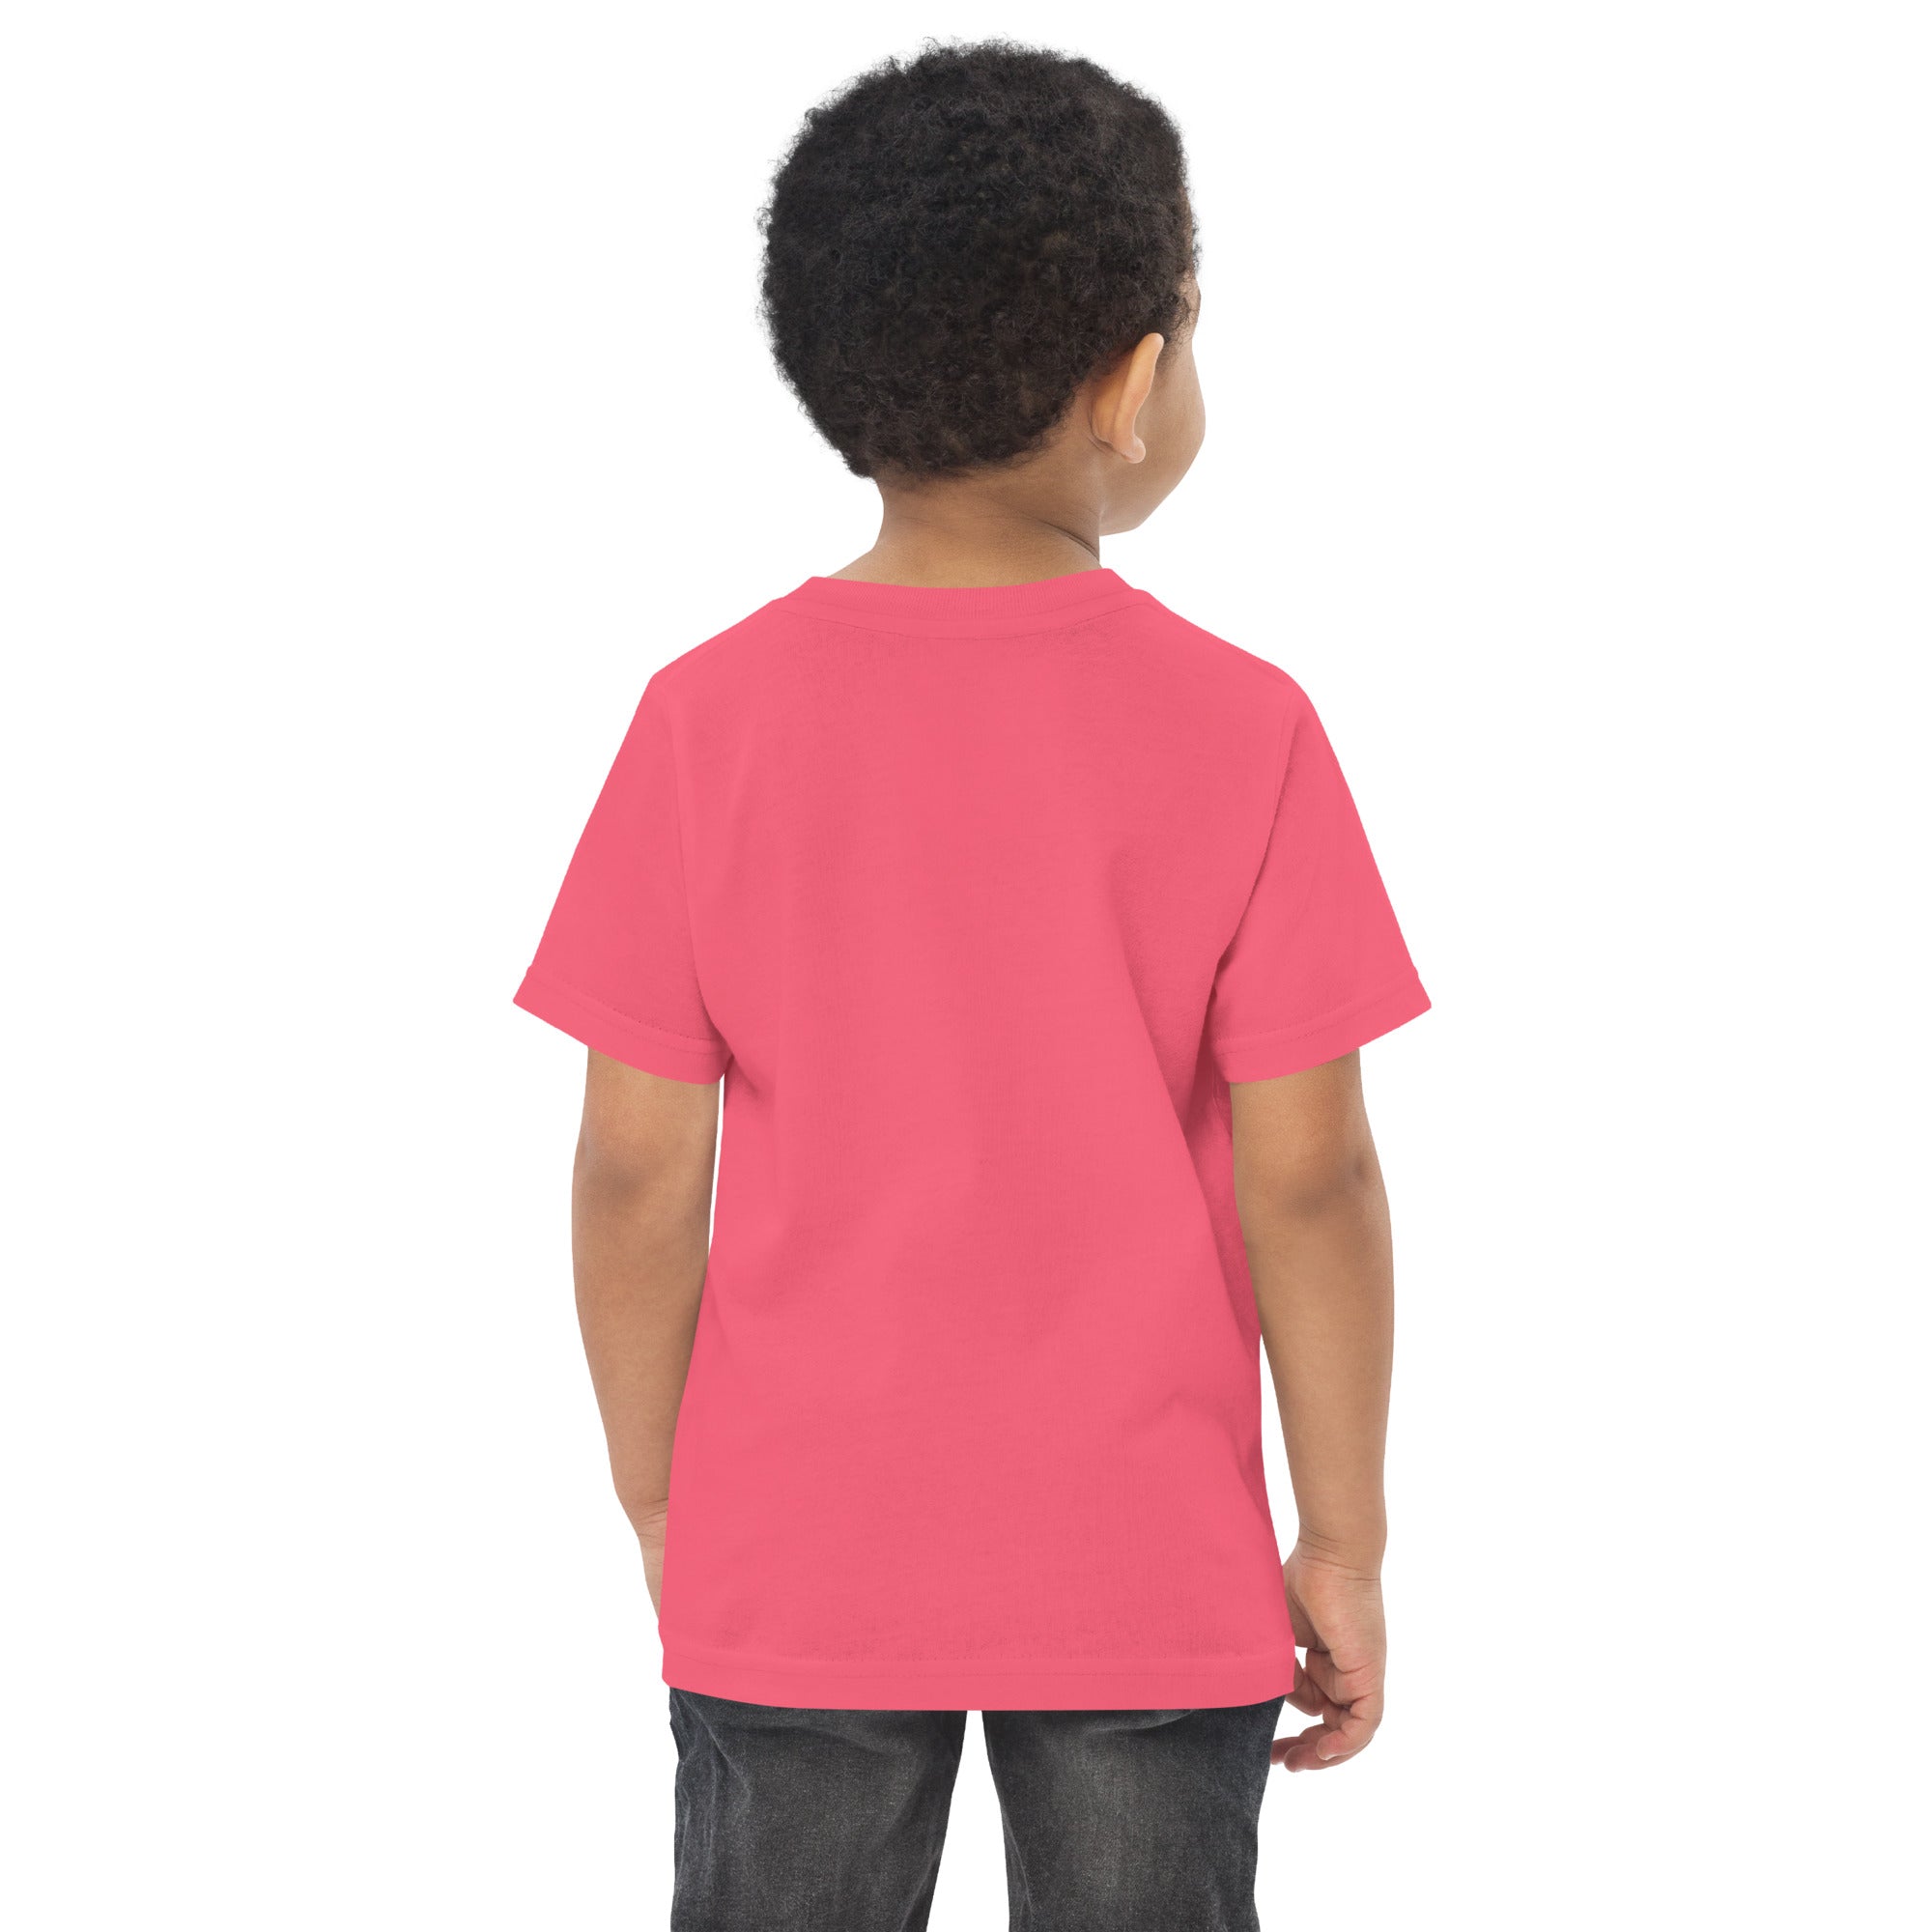 Pink Spanish Fly Logo Toddler T-Shirt